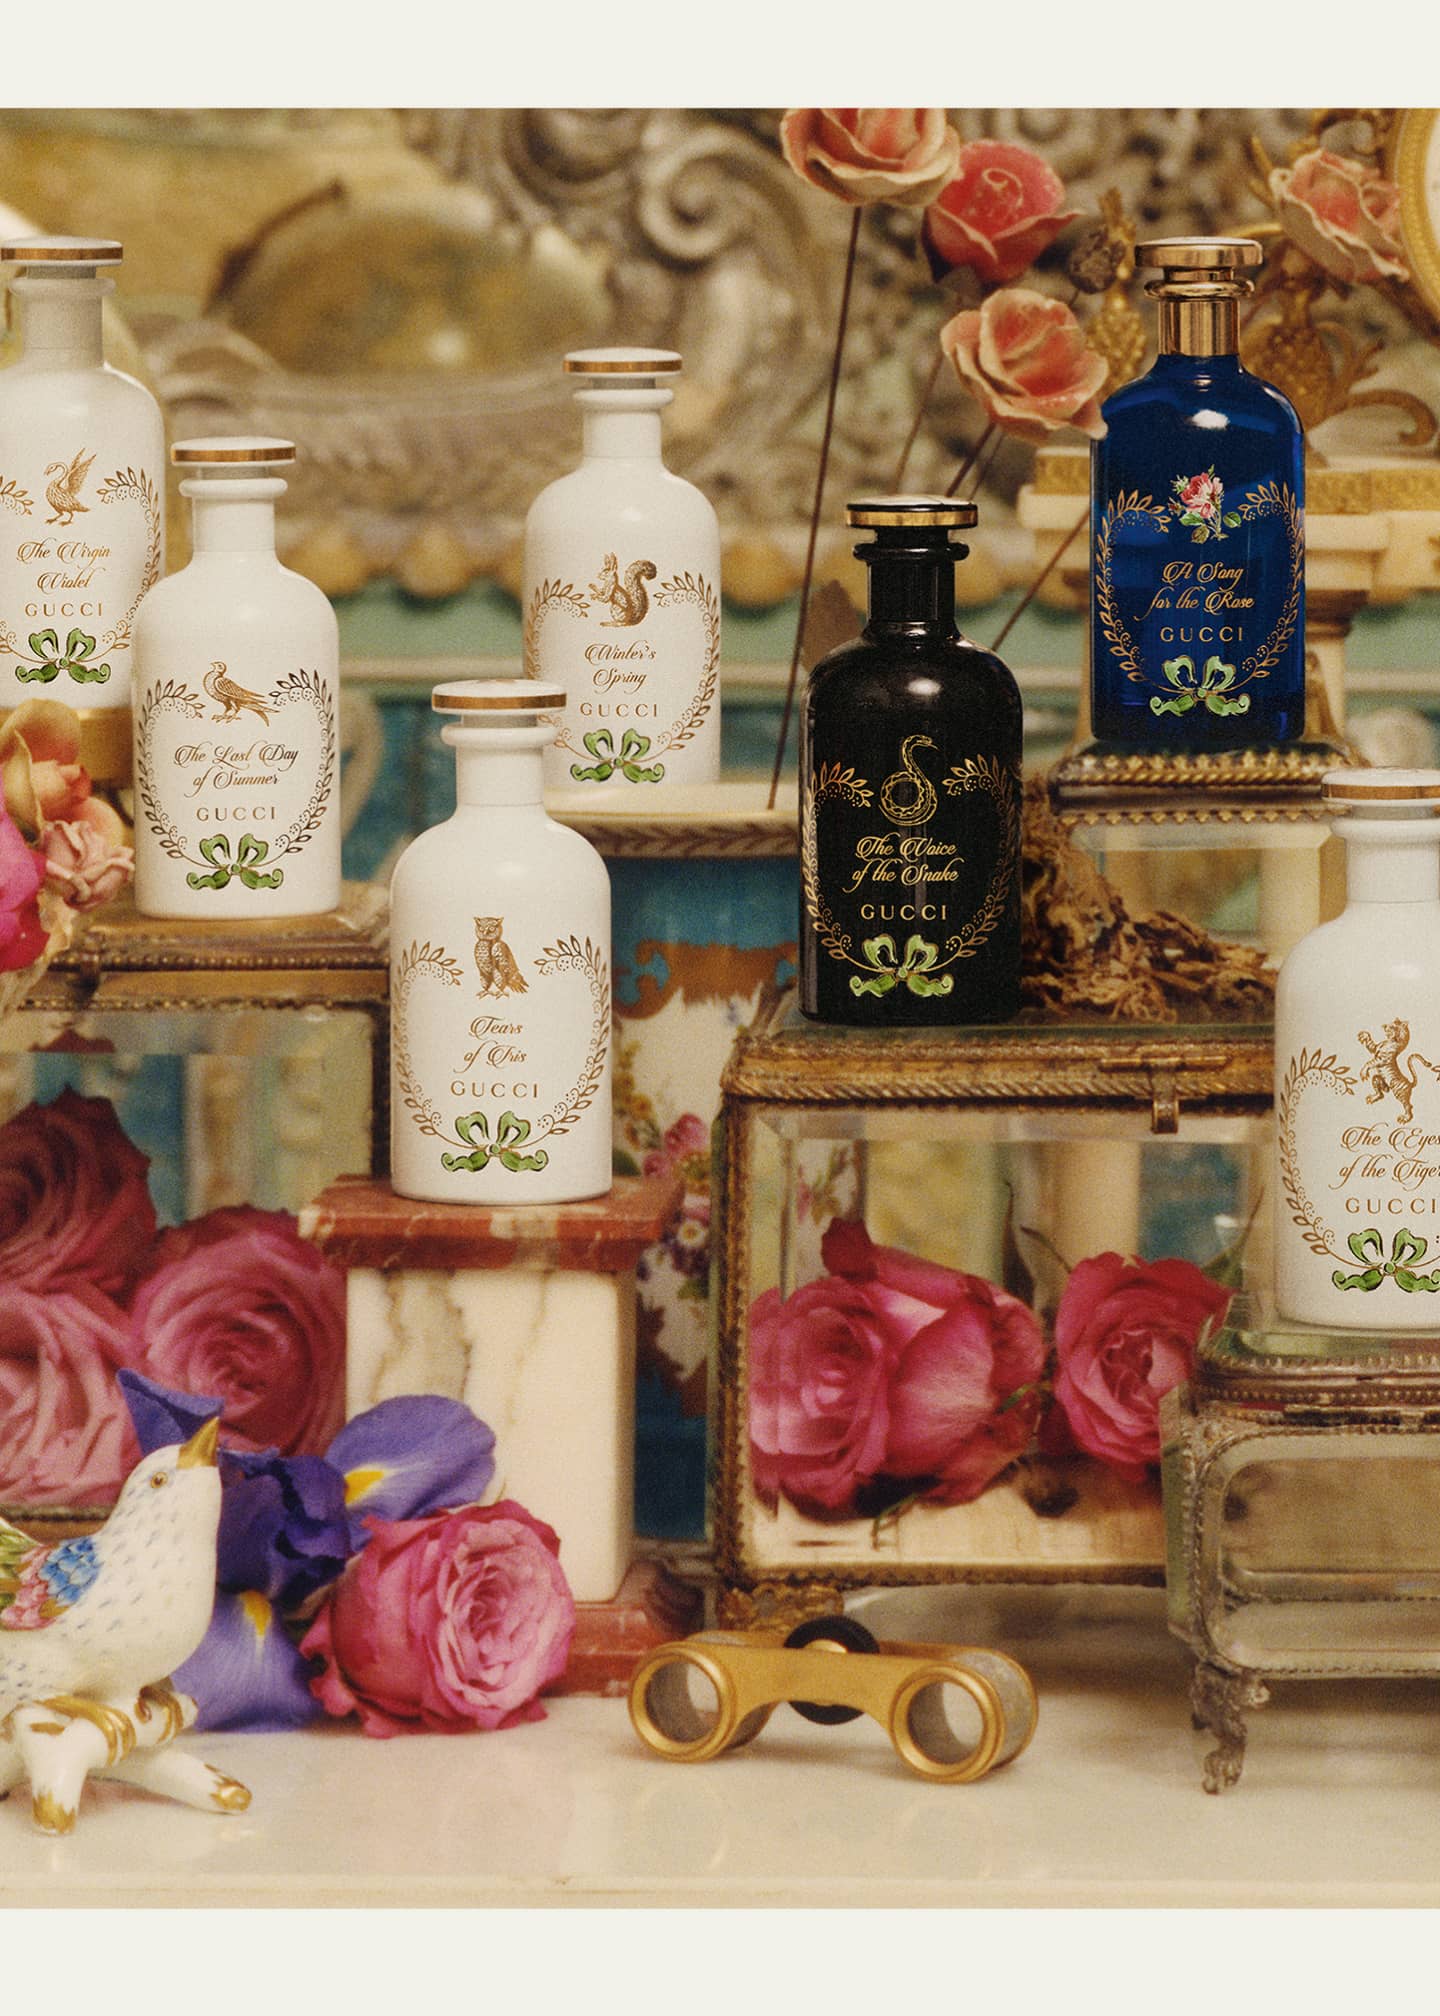 Gucci The Alchemist's Garden Winter's Spring Eau de Parfum, 3.4 oz